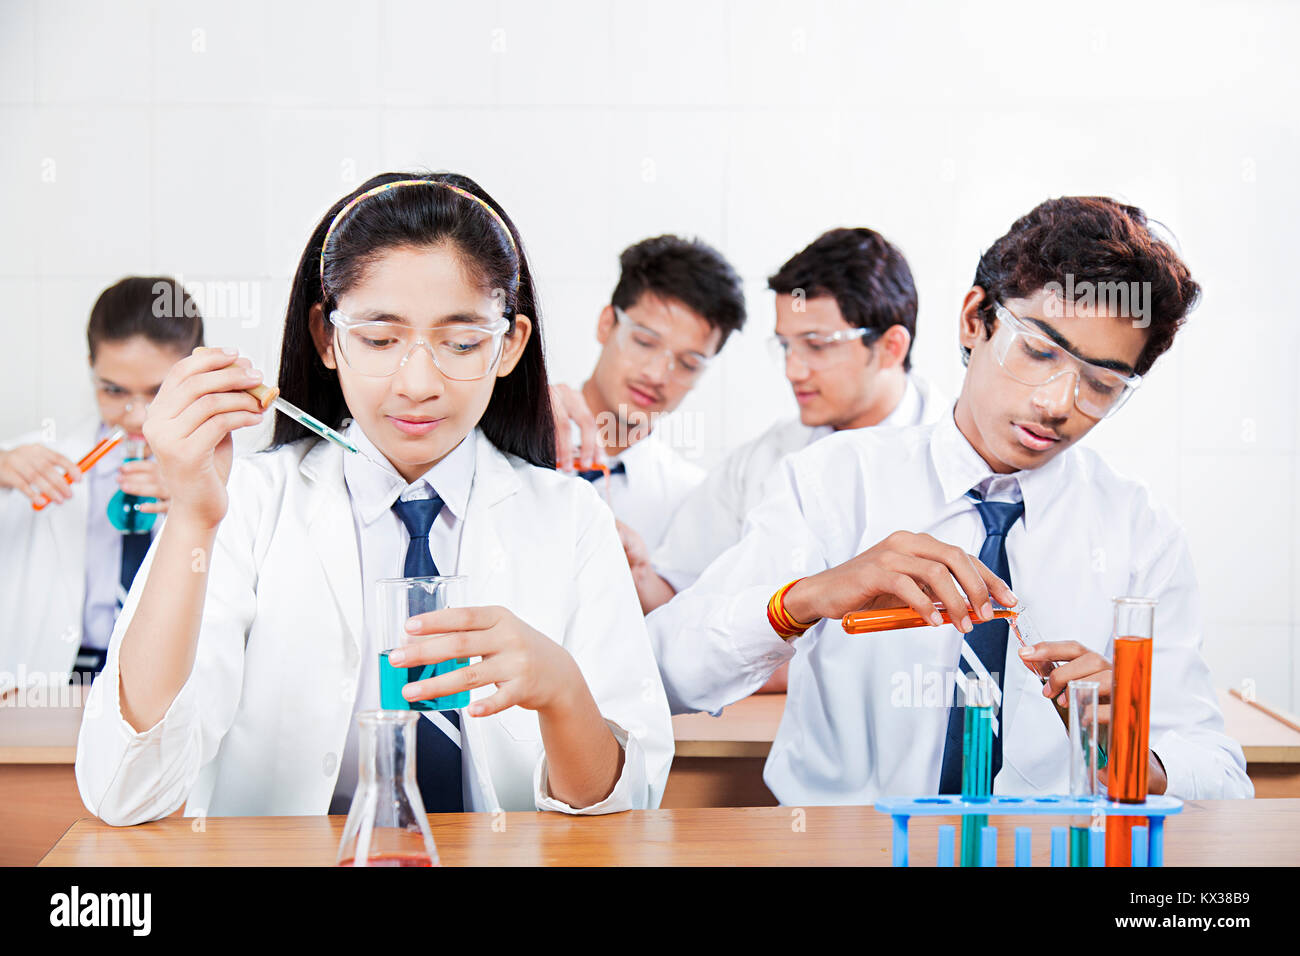 Indische Schule jugendliche Schüler Mitschüler in der Chemischen Forschung Wissenschaft Labor Stockfoto